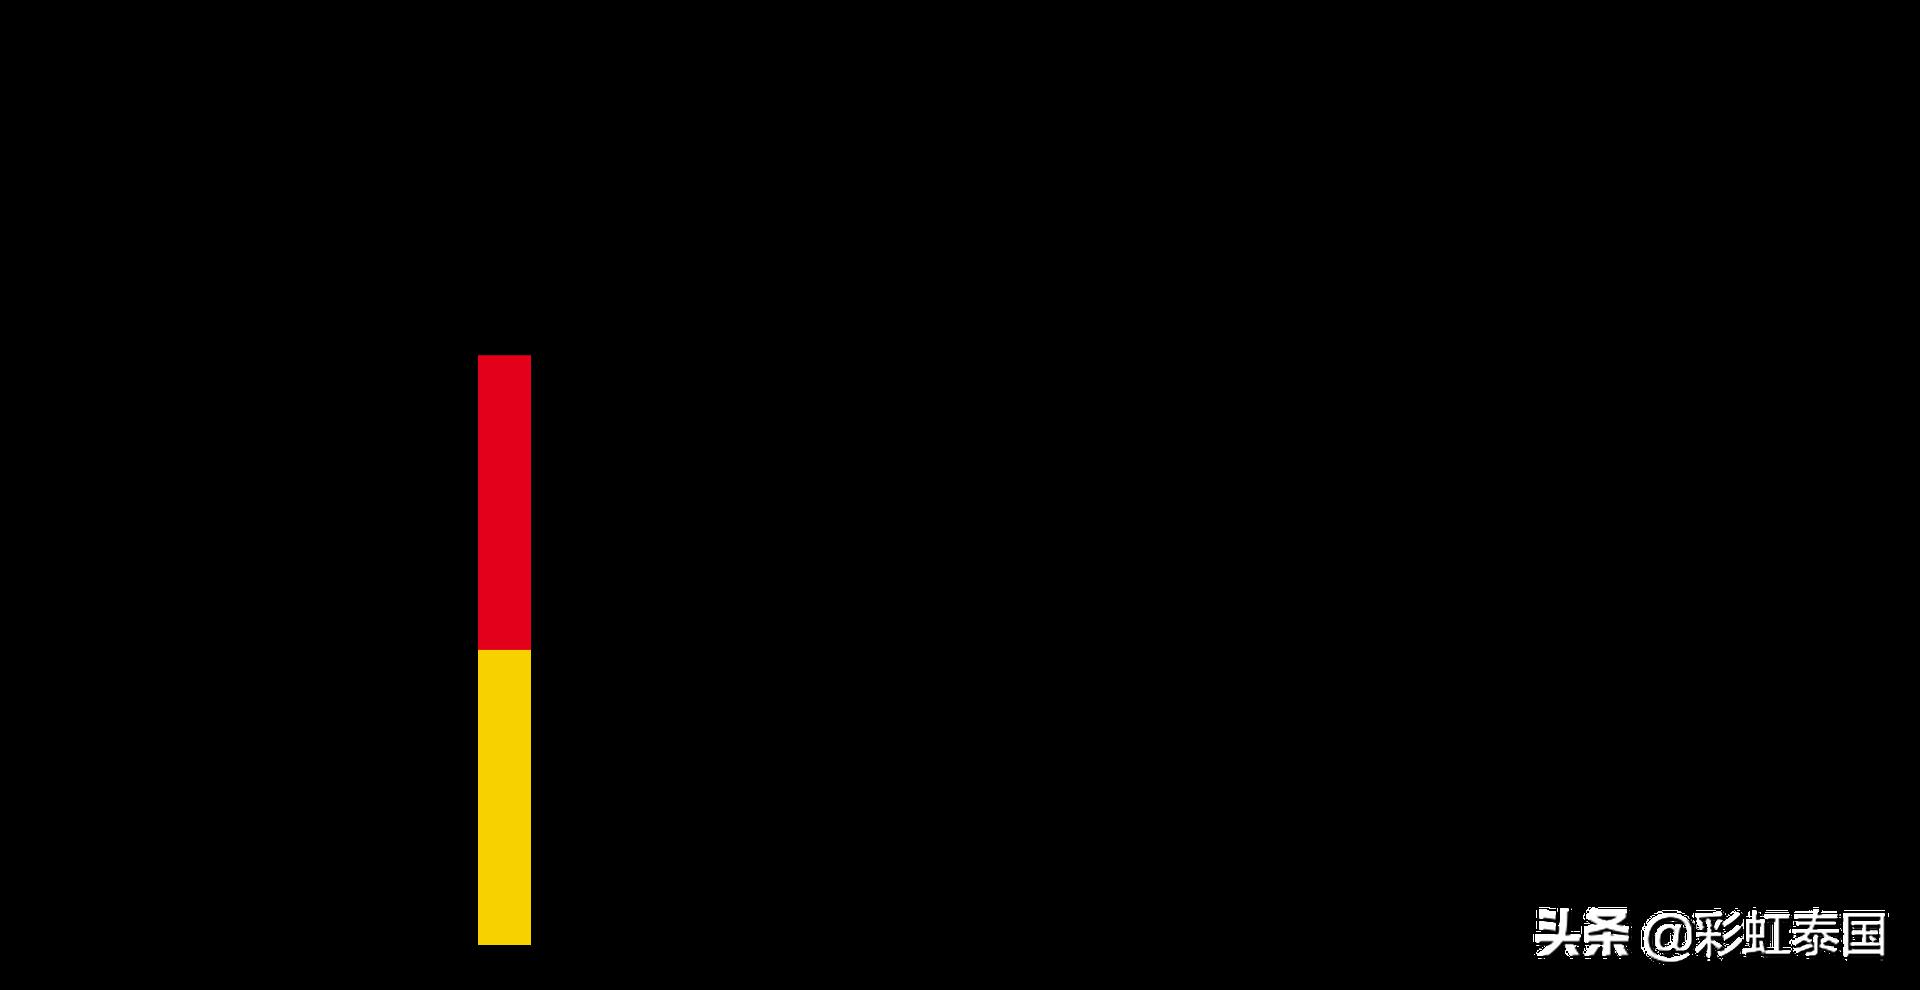 德甲标志大全 德国政府、各州及部门标志、徽章大全(3)